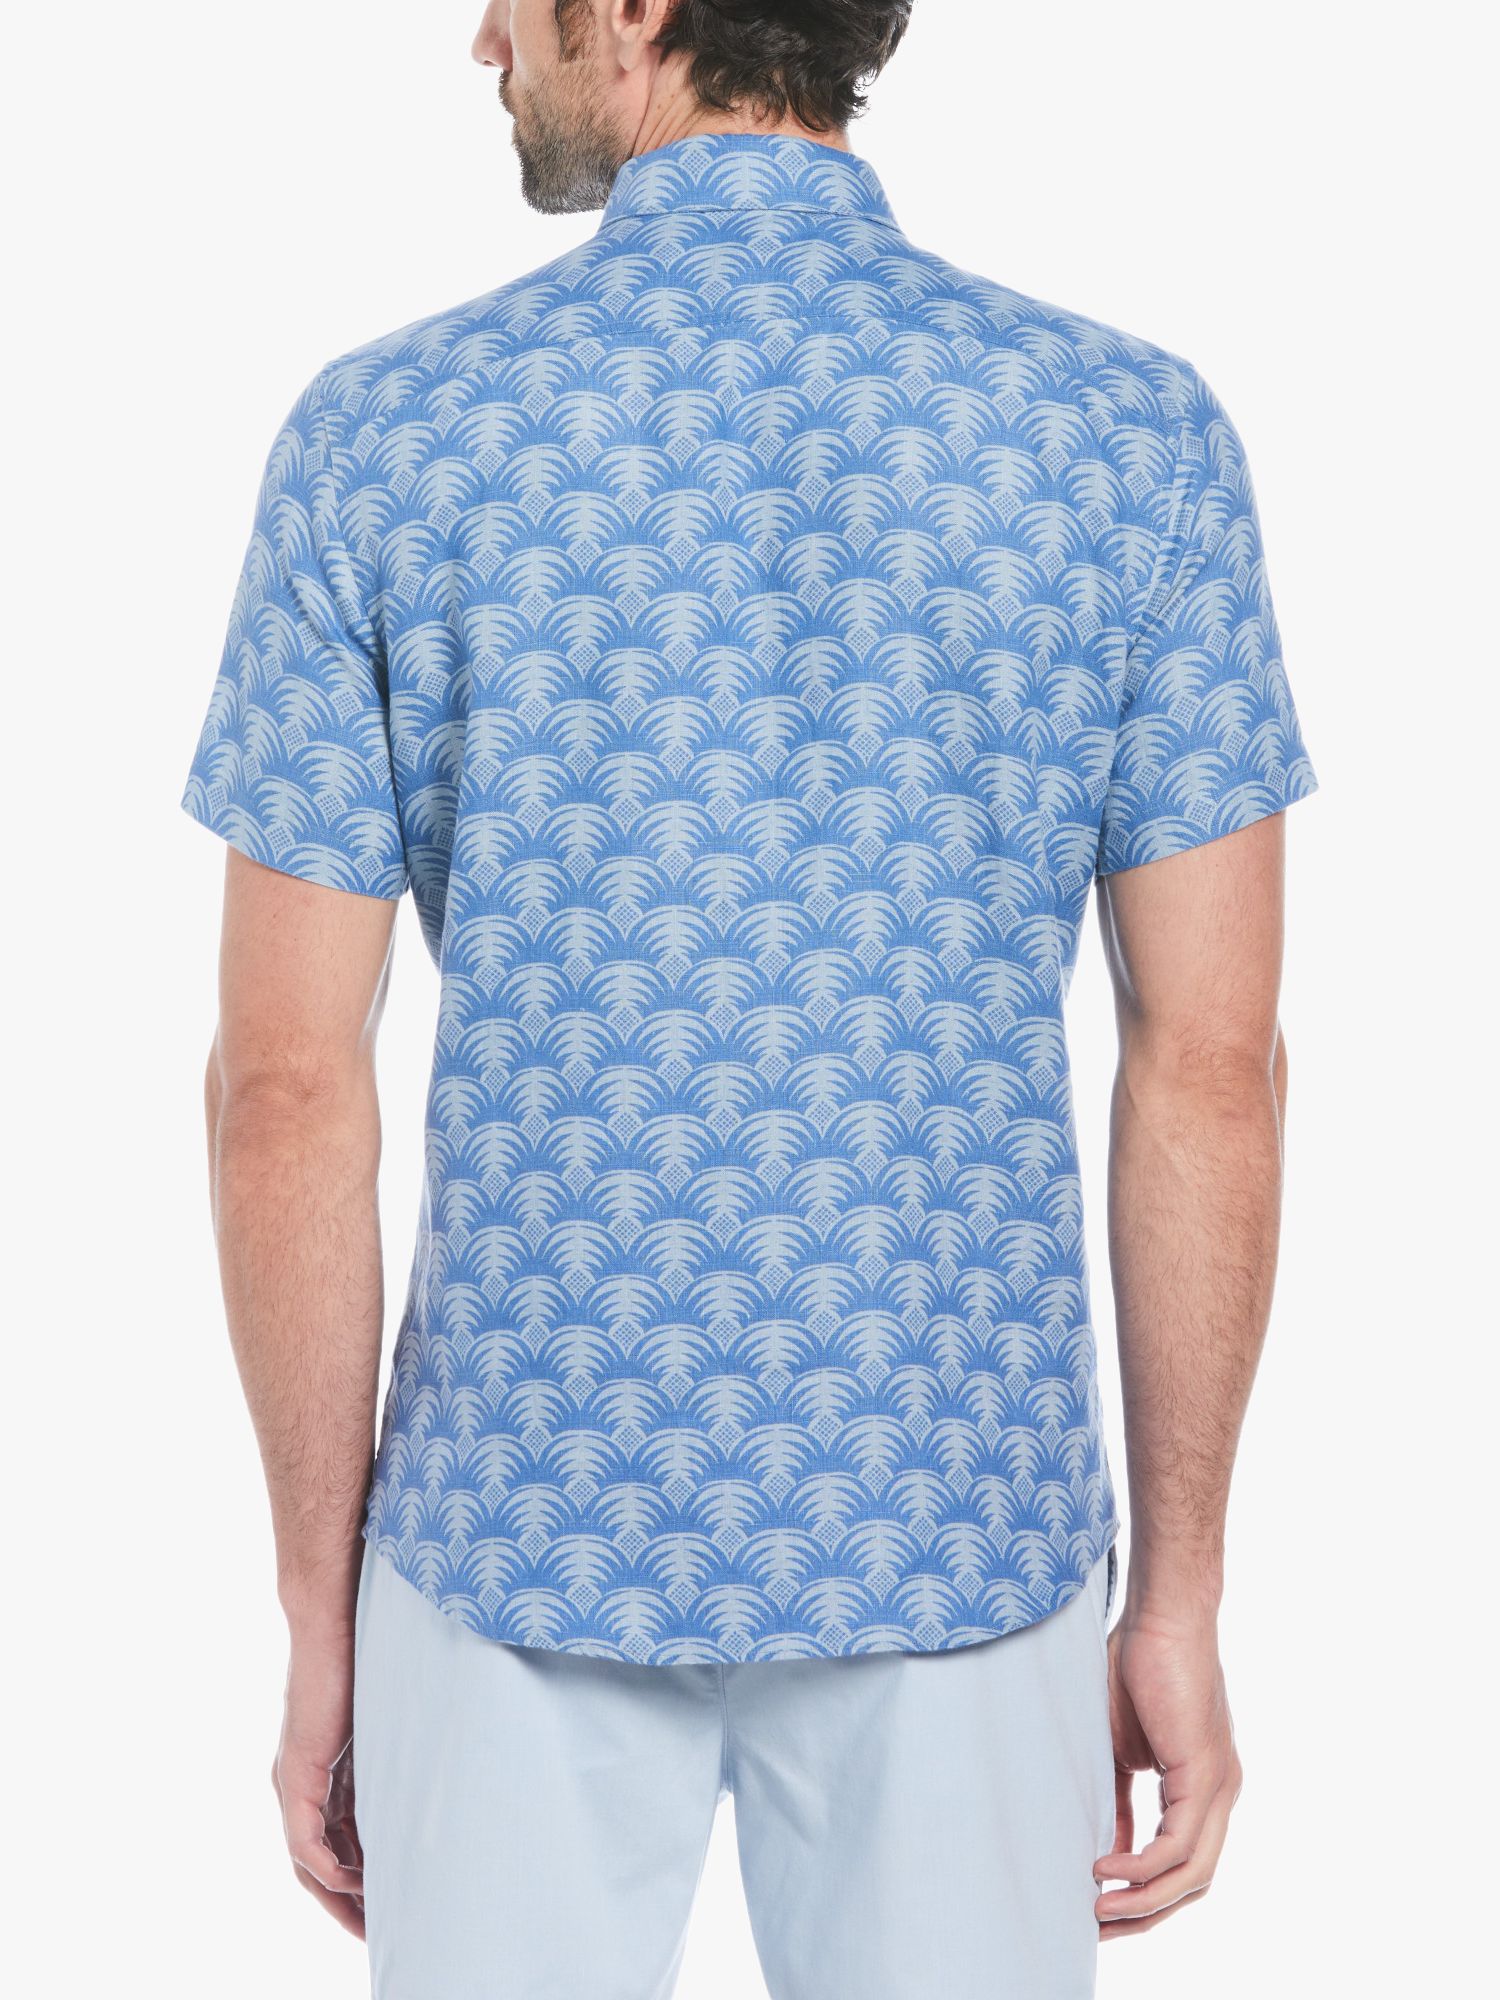 Original Penguin Short Sleeve Linen Shirt, Blue/White, S